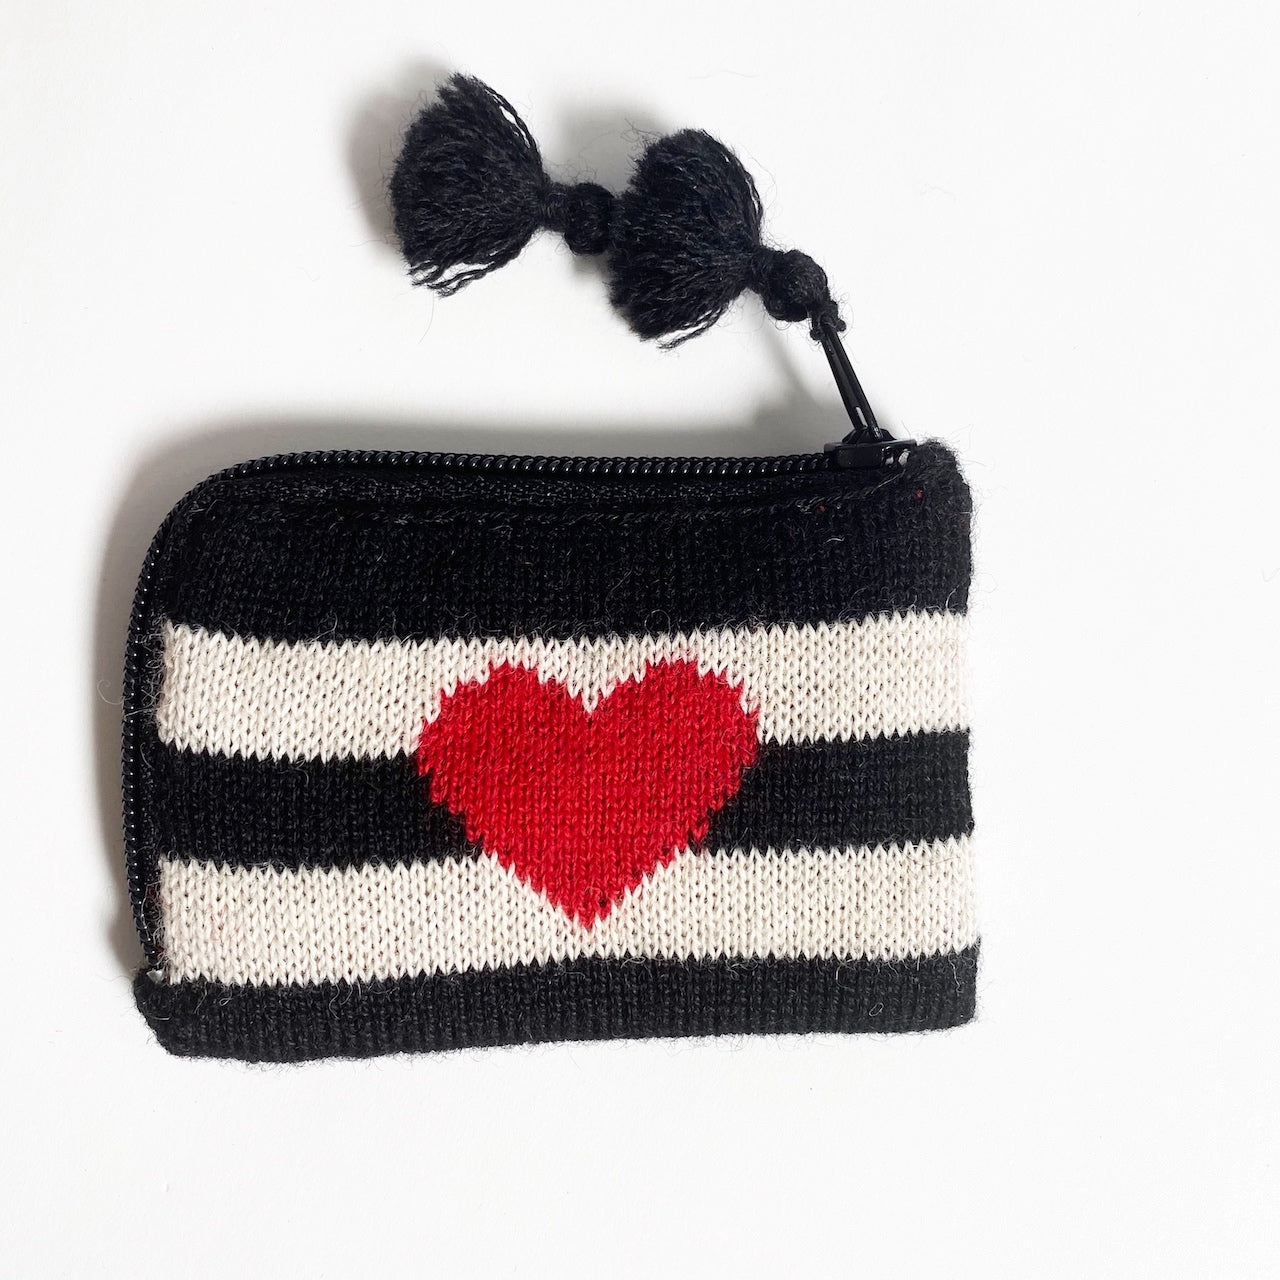 Red Heart Crochet Change Purse